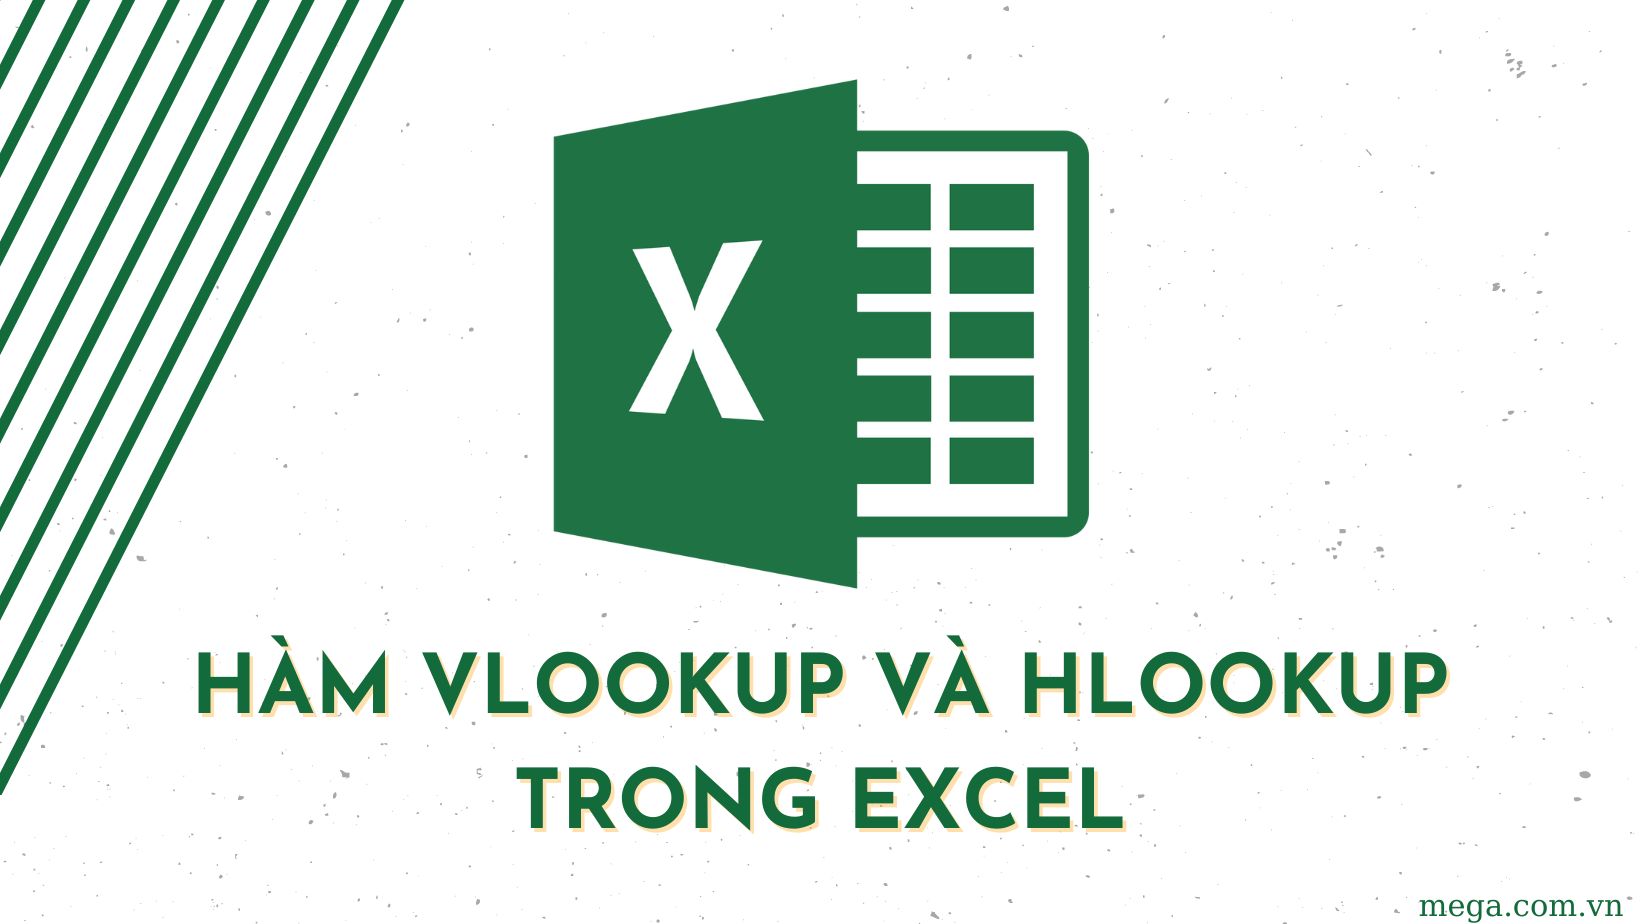 Hàm Hlookup là gì và cách sử dụng nó trong Excel?
